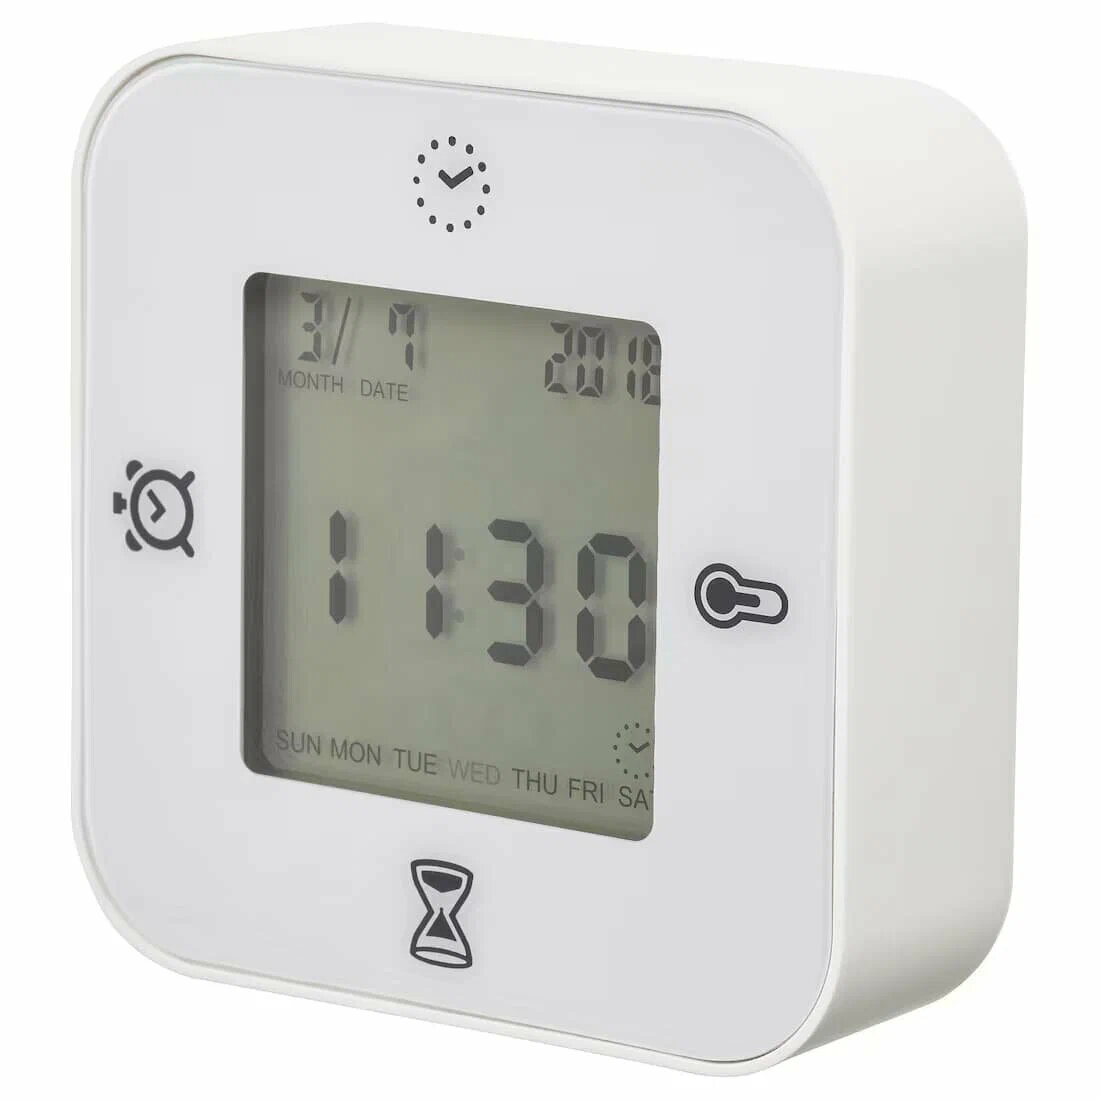 Клоккис - часы, термометр, будильник и таймер в одном устройстве